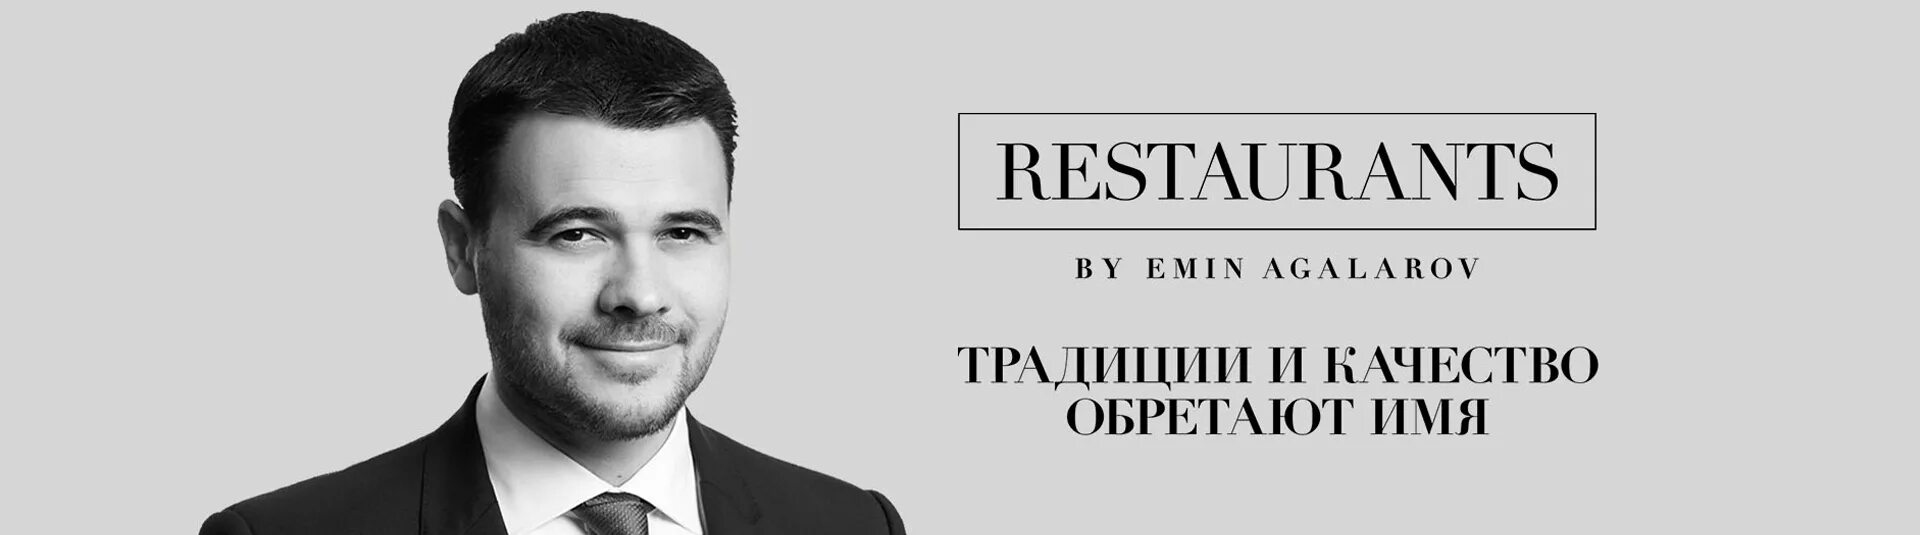 Restaurants by Emin Agalarov. Рестораны Эмина Агаларова. Restorans by Emin Agalarov лого. Аск агаларов